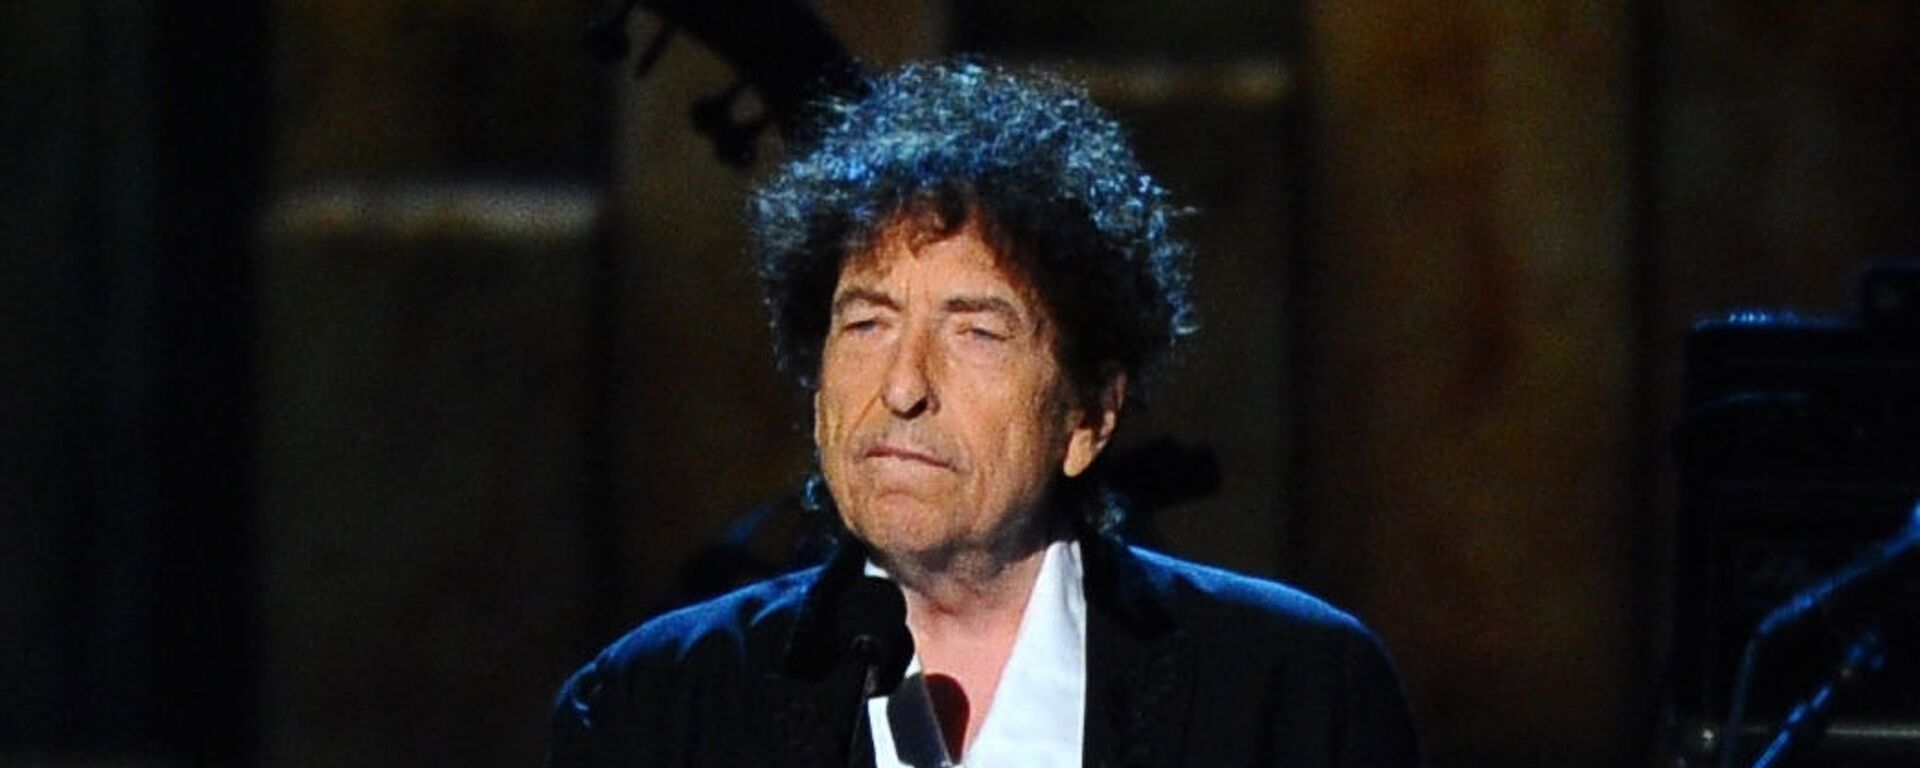 Американский музыкант Боб Дилан, архивное фото - Sputnik Беларусь, 1920, 07.12.2020